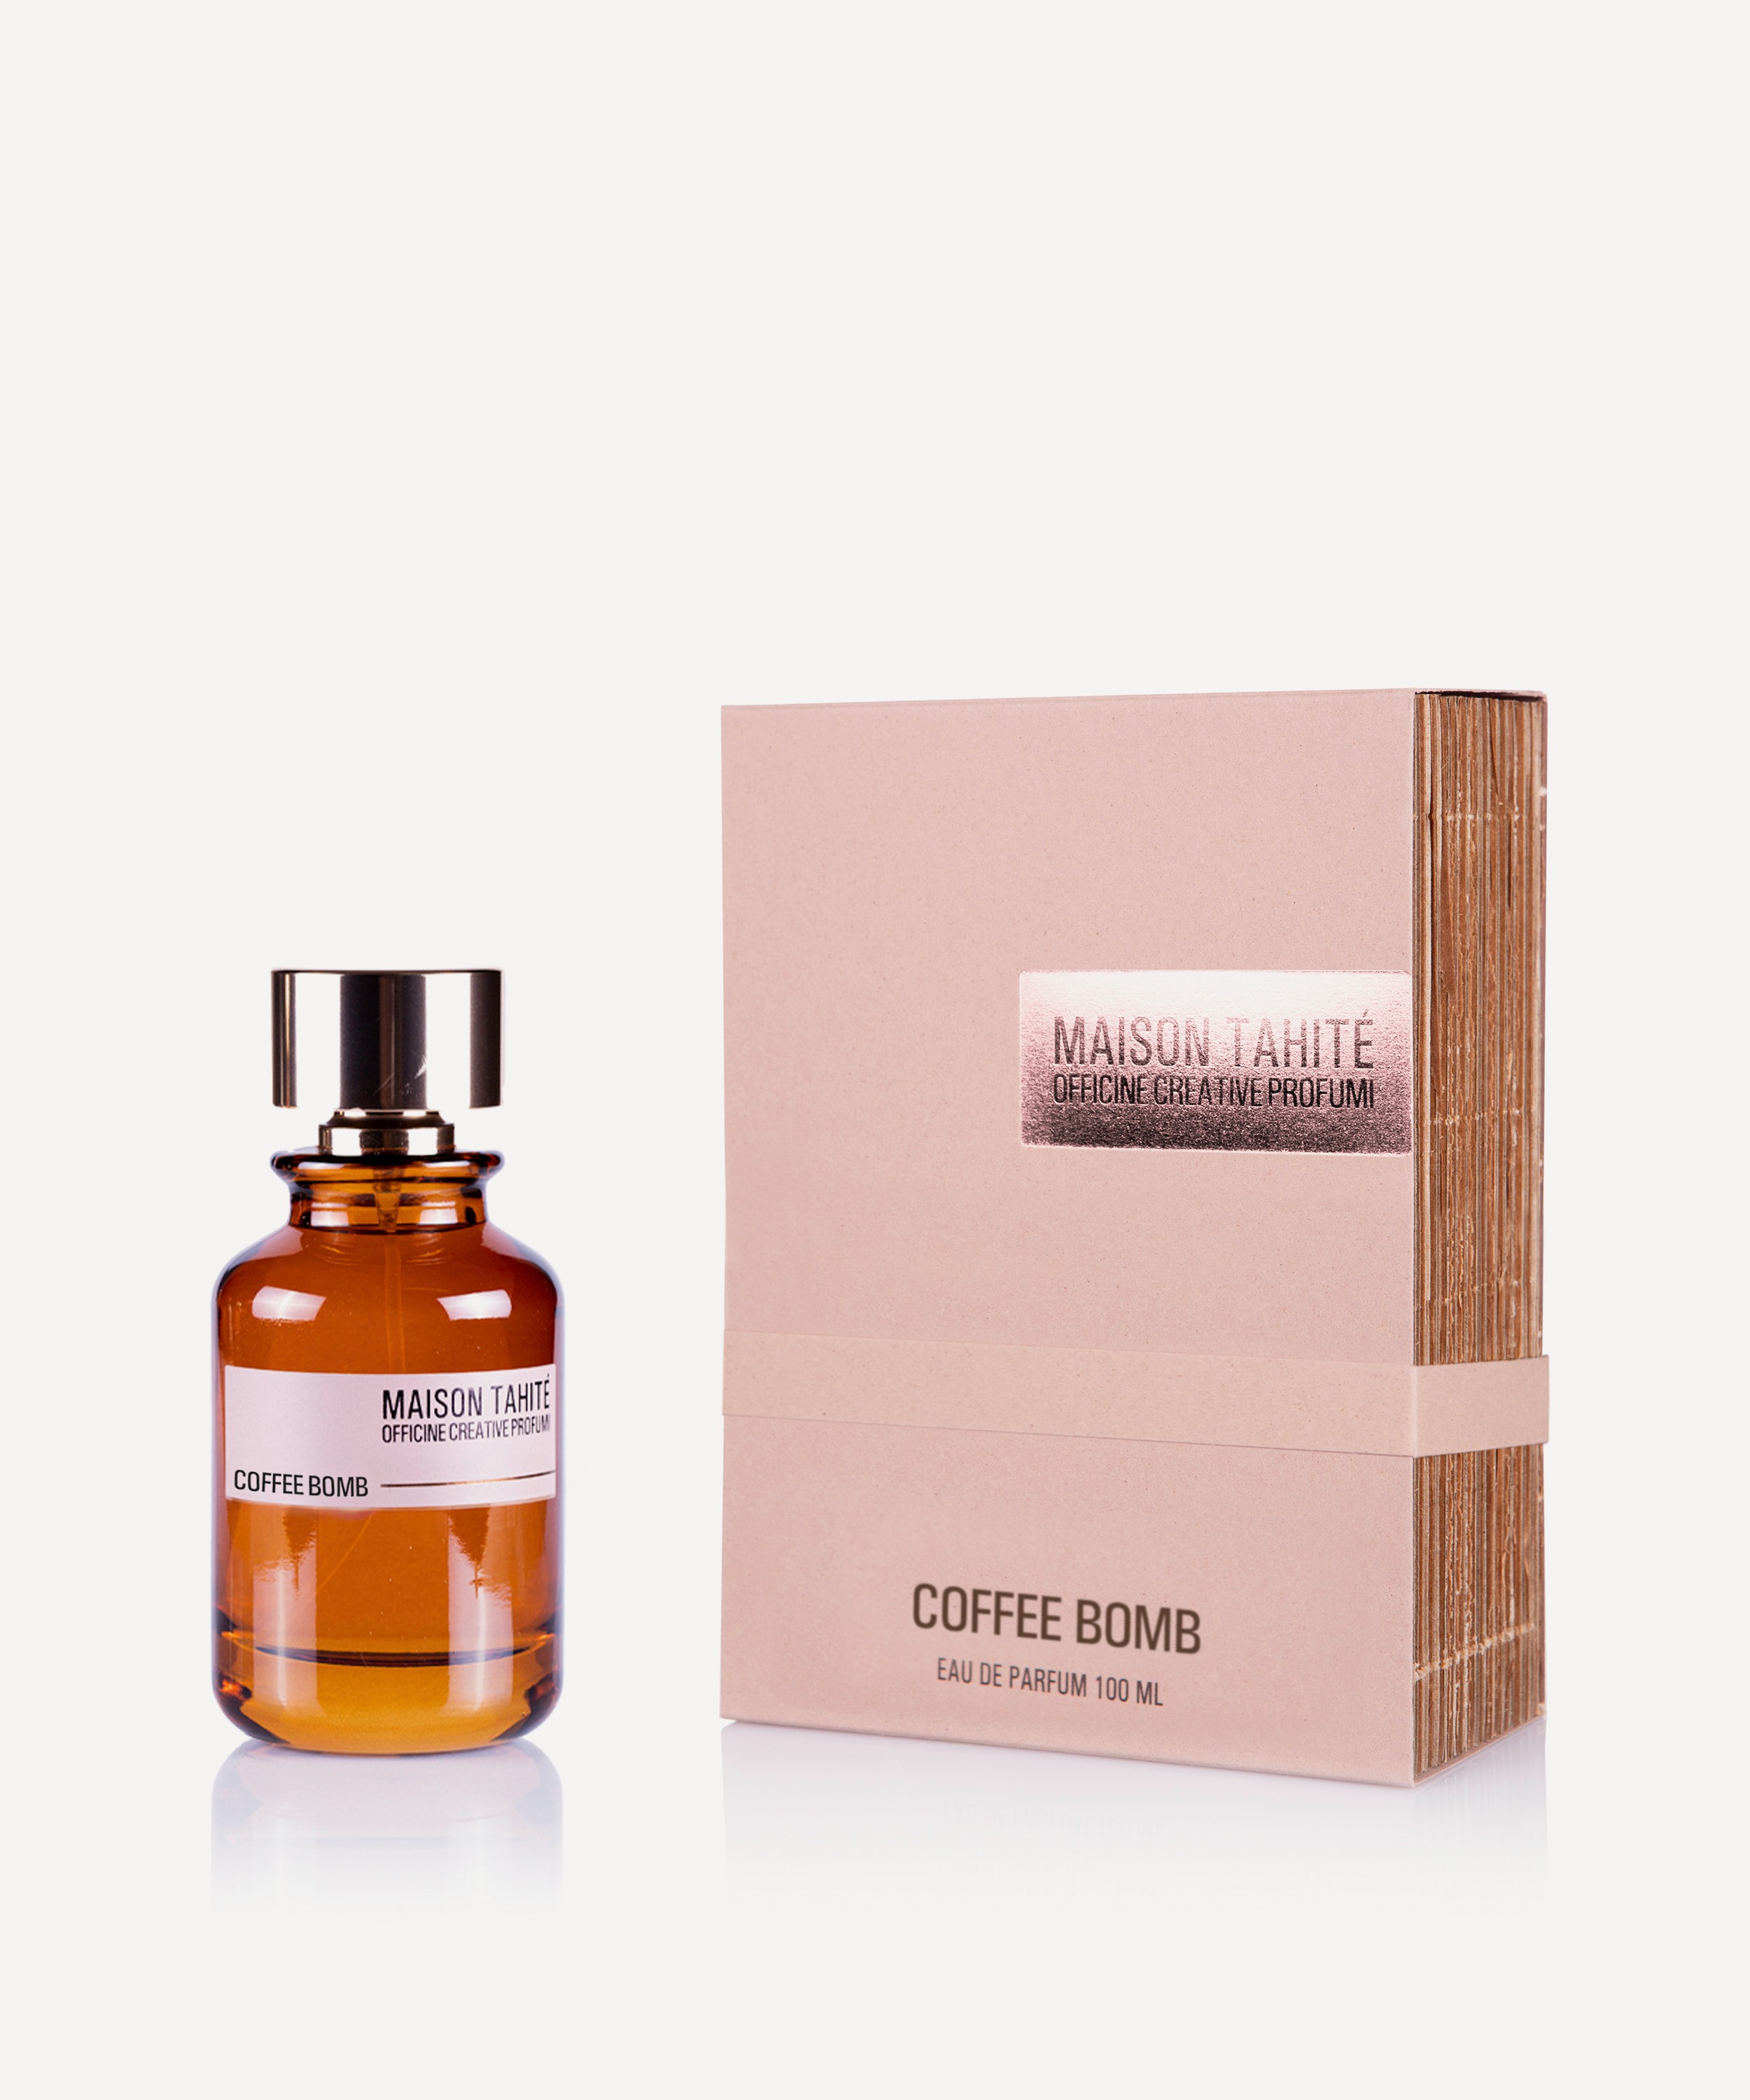 Maison Tahité – Officine Creative Profumi - Coffee Bomb Eau de Parfum 100ml image number 1